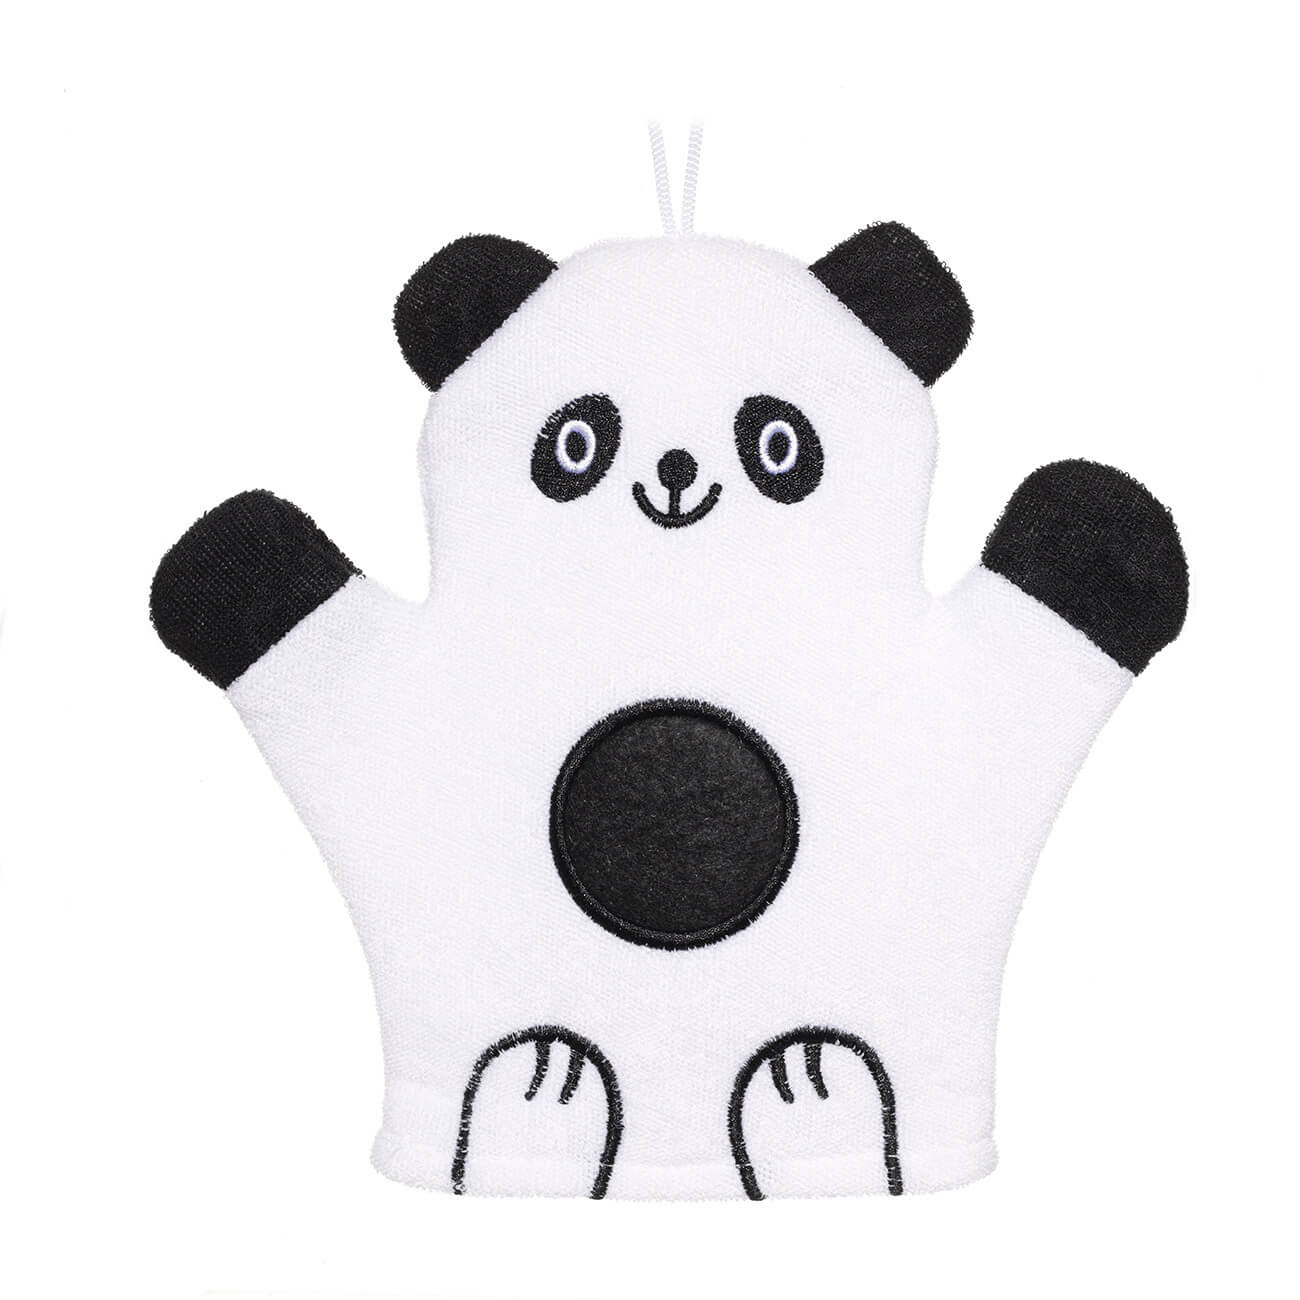 Мочалка-варежка для мытья тела, 20х20 см, детская, полиэстер, черно-белая, Панда, Panda губка для мытья тела 12 см детская полиуретан белая панда childhood